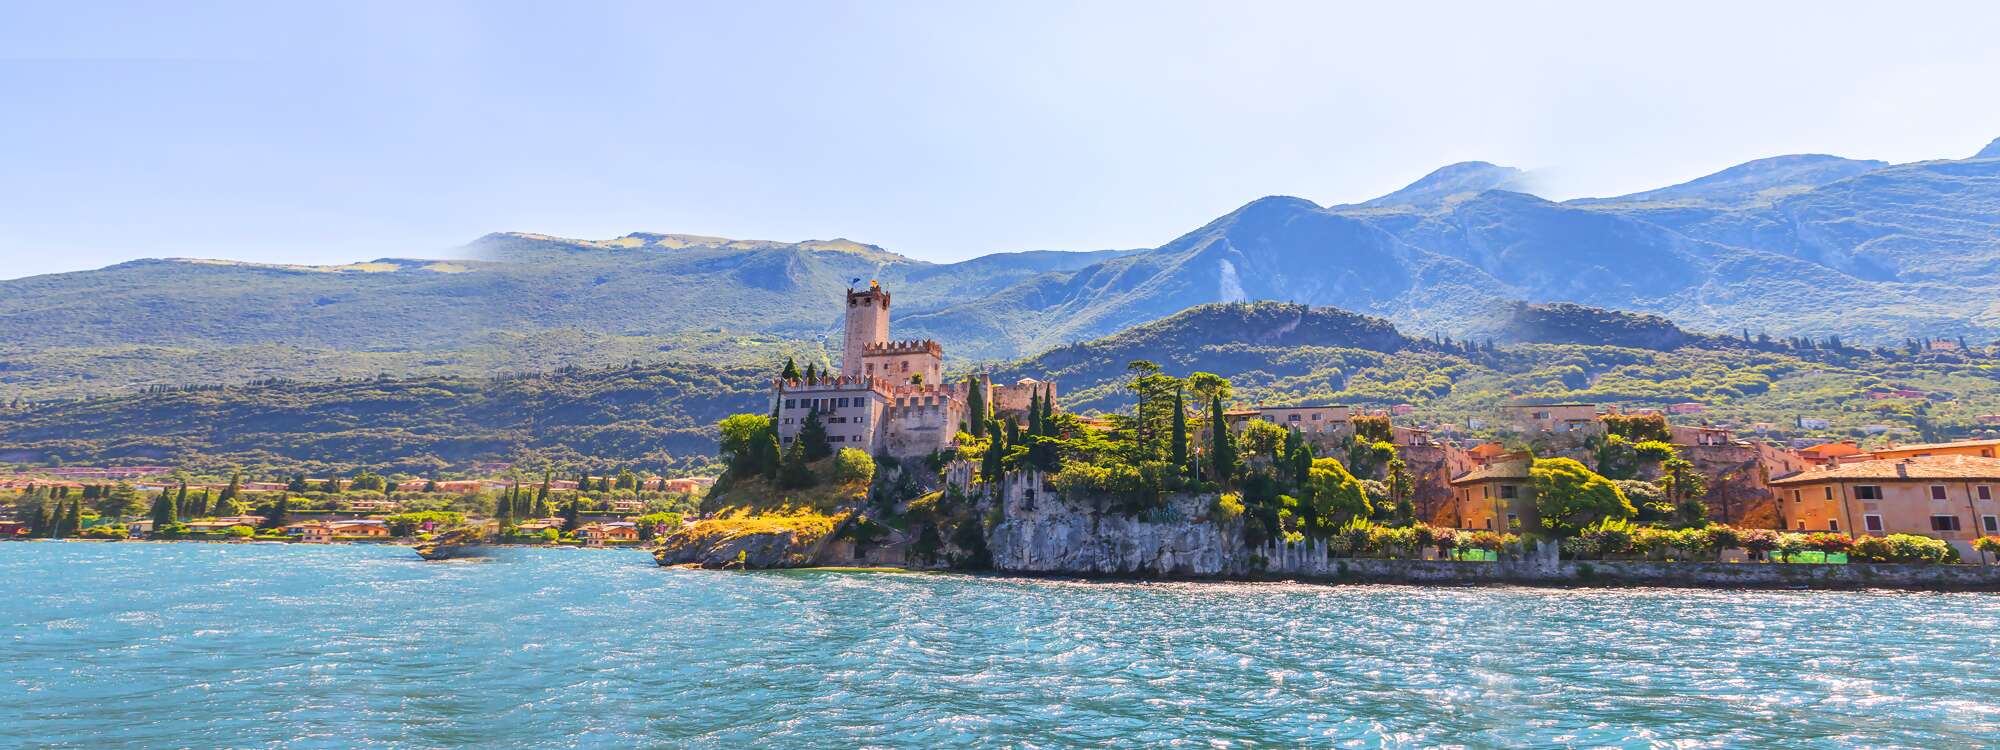 Die Scaligerburg in Malcesine ist eine Höhenburg in der gleichnamigen italienischen Gemeinde am Ostufer des Gardasees in der Provinz Verona in der Region Gardasee